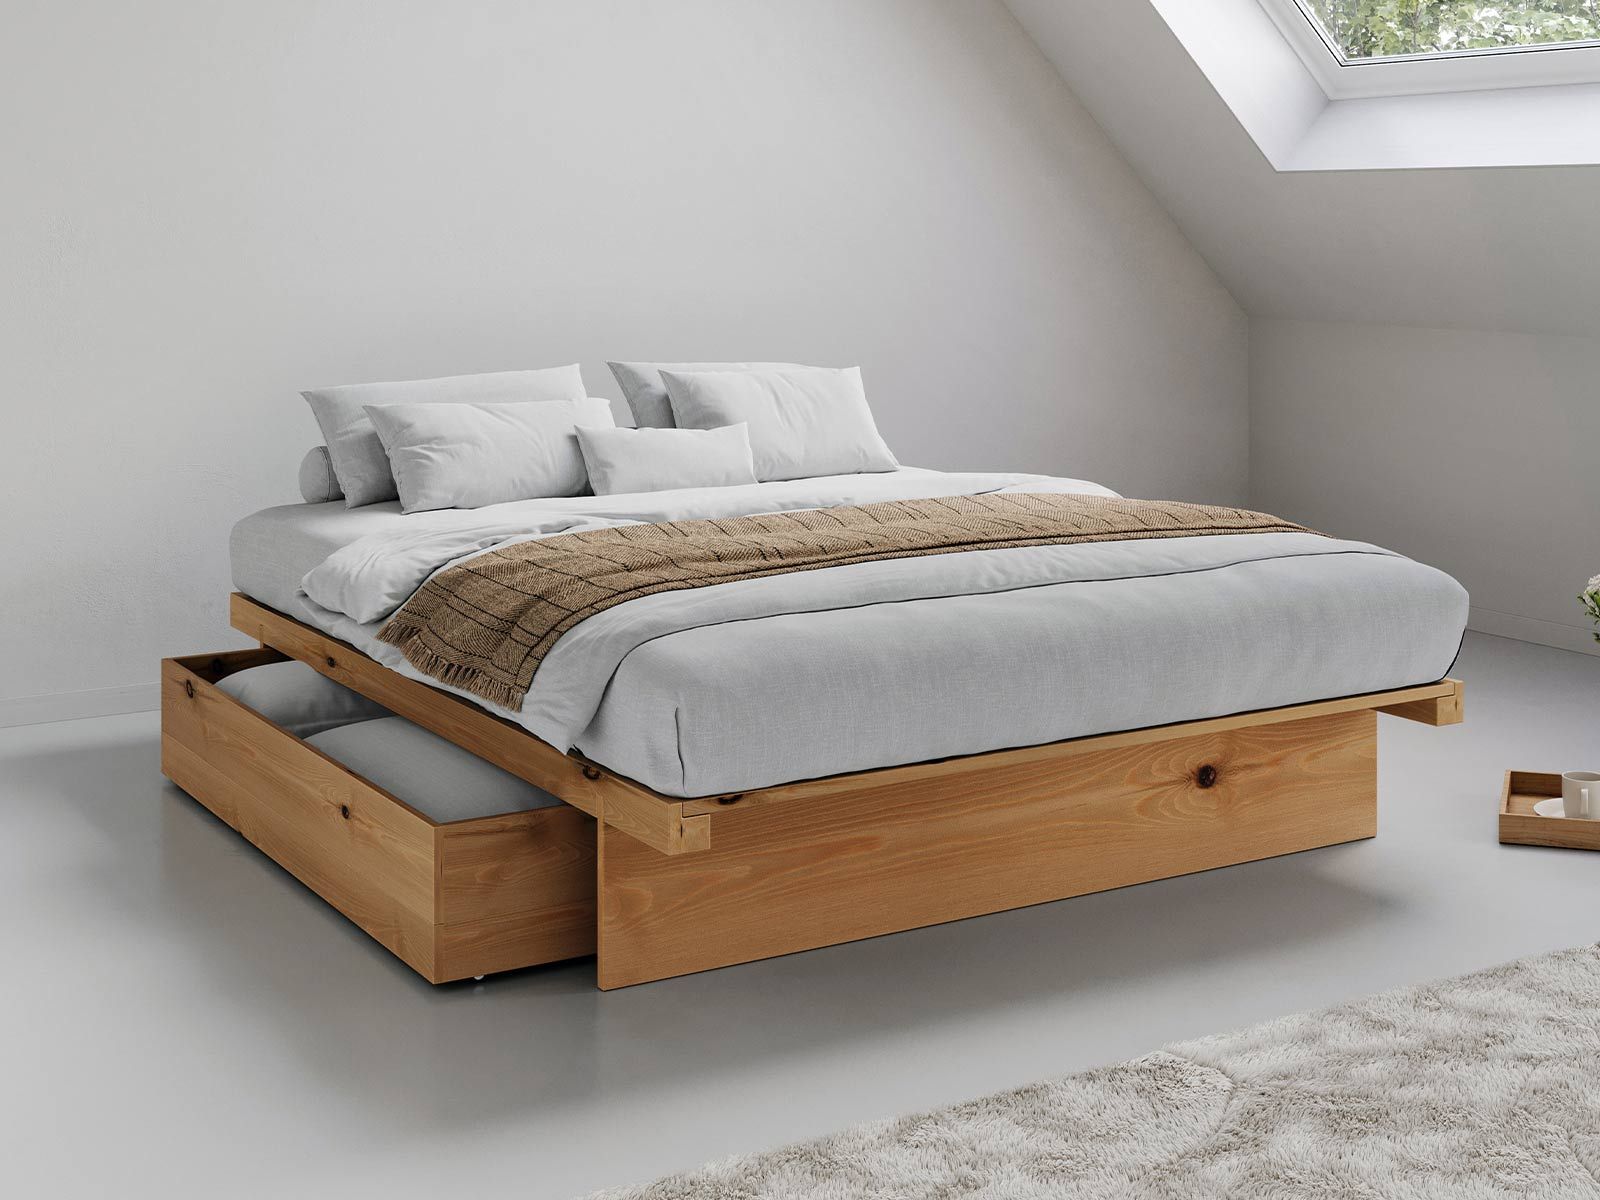 Bố trí giường ngủ có ngăn kéo gọn gàng, tận dụng tối đa không gian dưới gầm giường